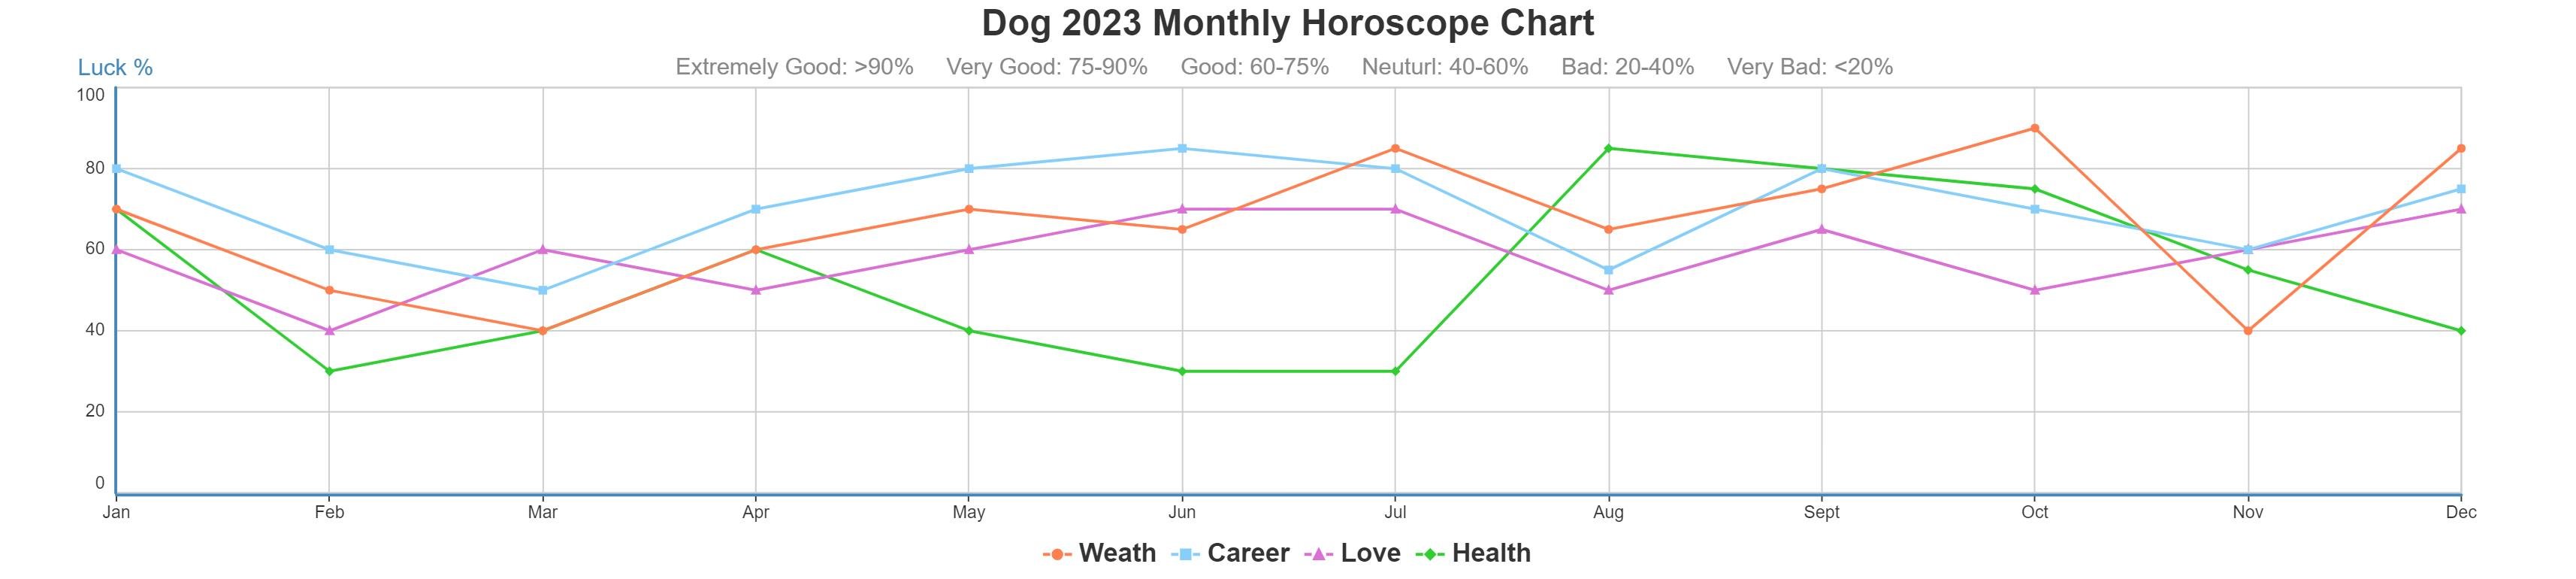 Dog 2023 monthly horoscope